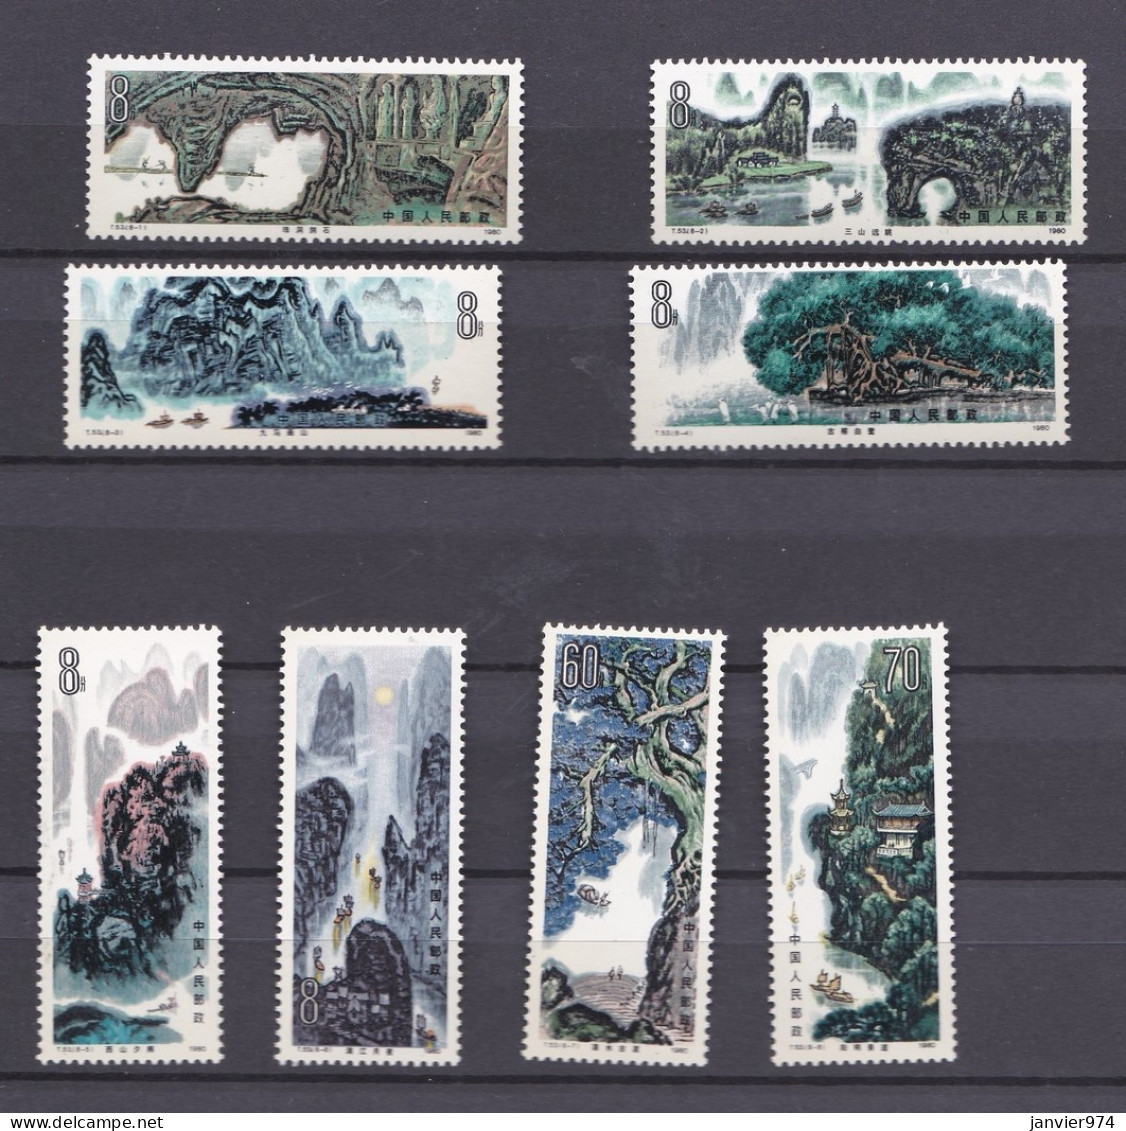 Chine 1980 , La Serie Complete Peintures De Paysages De Guilin, 8 Timbres Neufs  N° 1629 - 1636 - Neufs